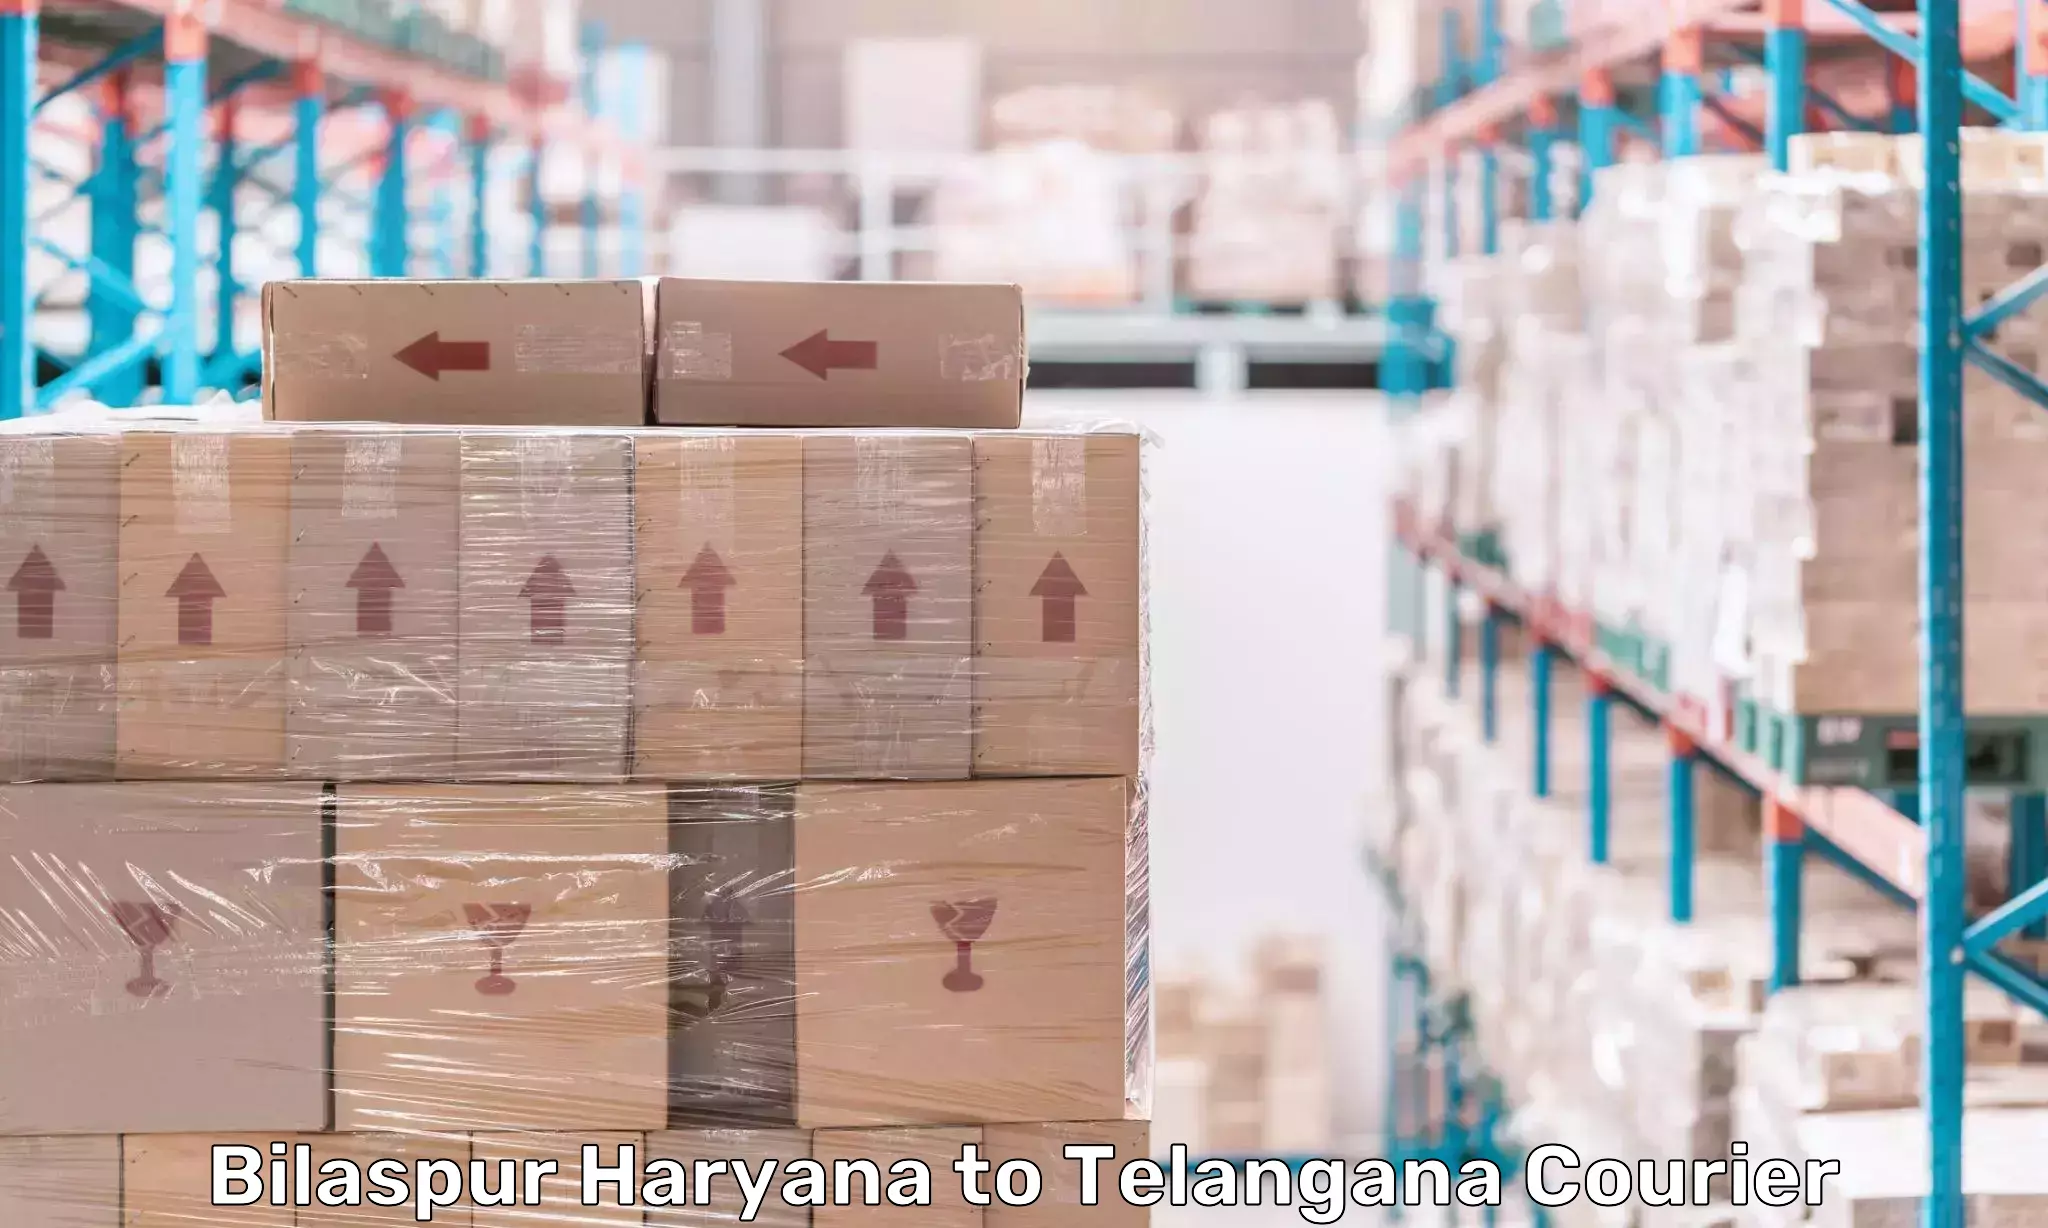 Digital shipping tools in Bilaspur Haryana to Telangana